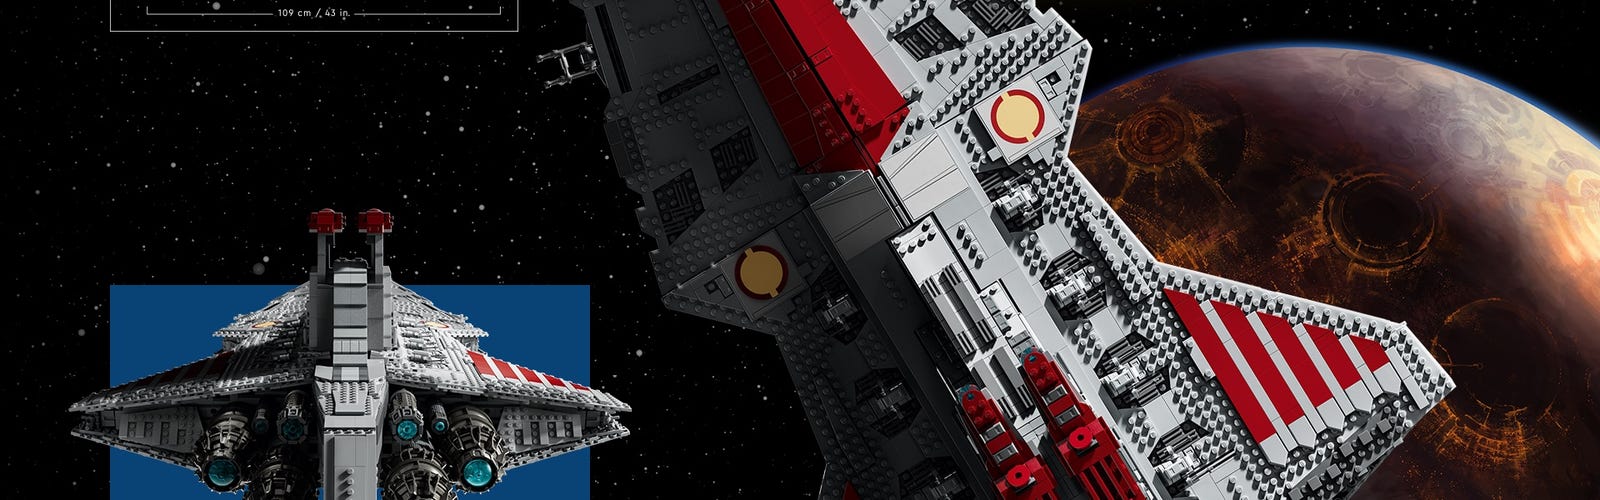 HI-Reeke Star Destroyer Building Block Set Venator Attack Cruiser Building  Kit Gift for Adult Red 